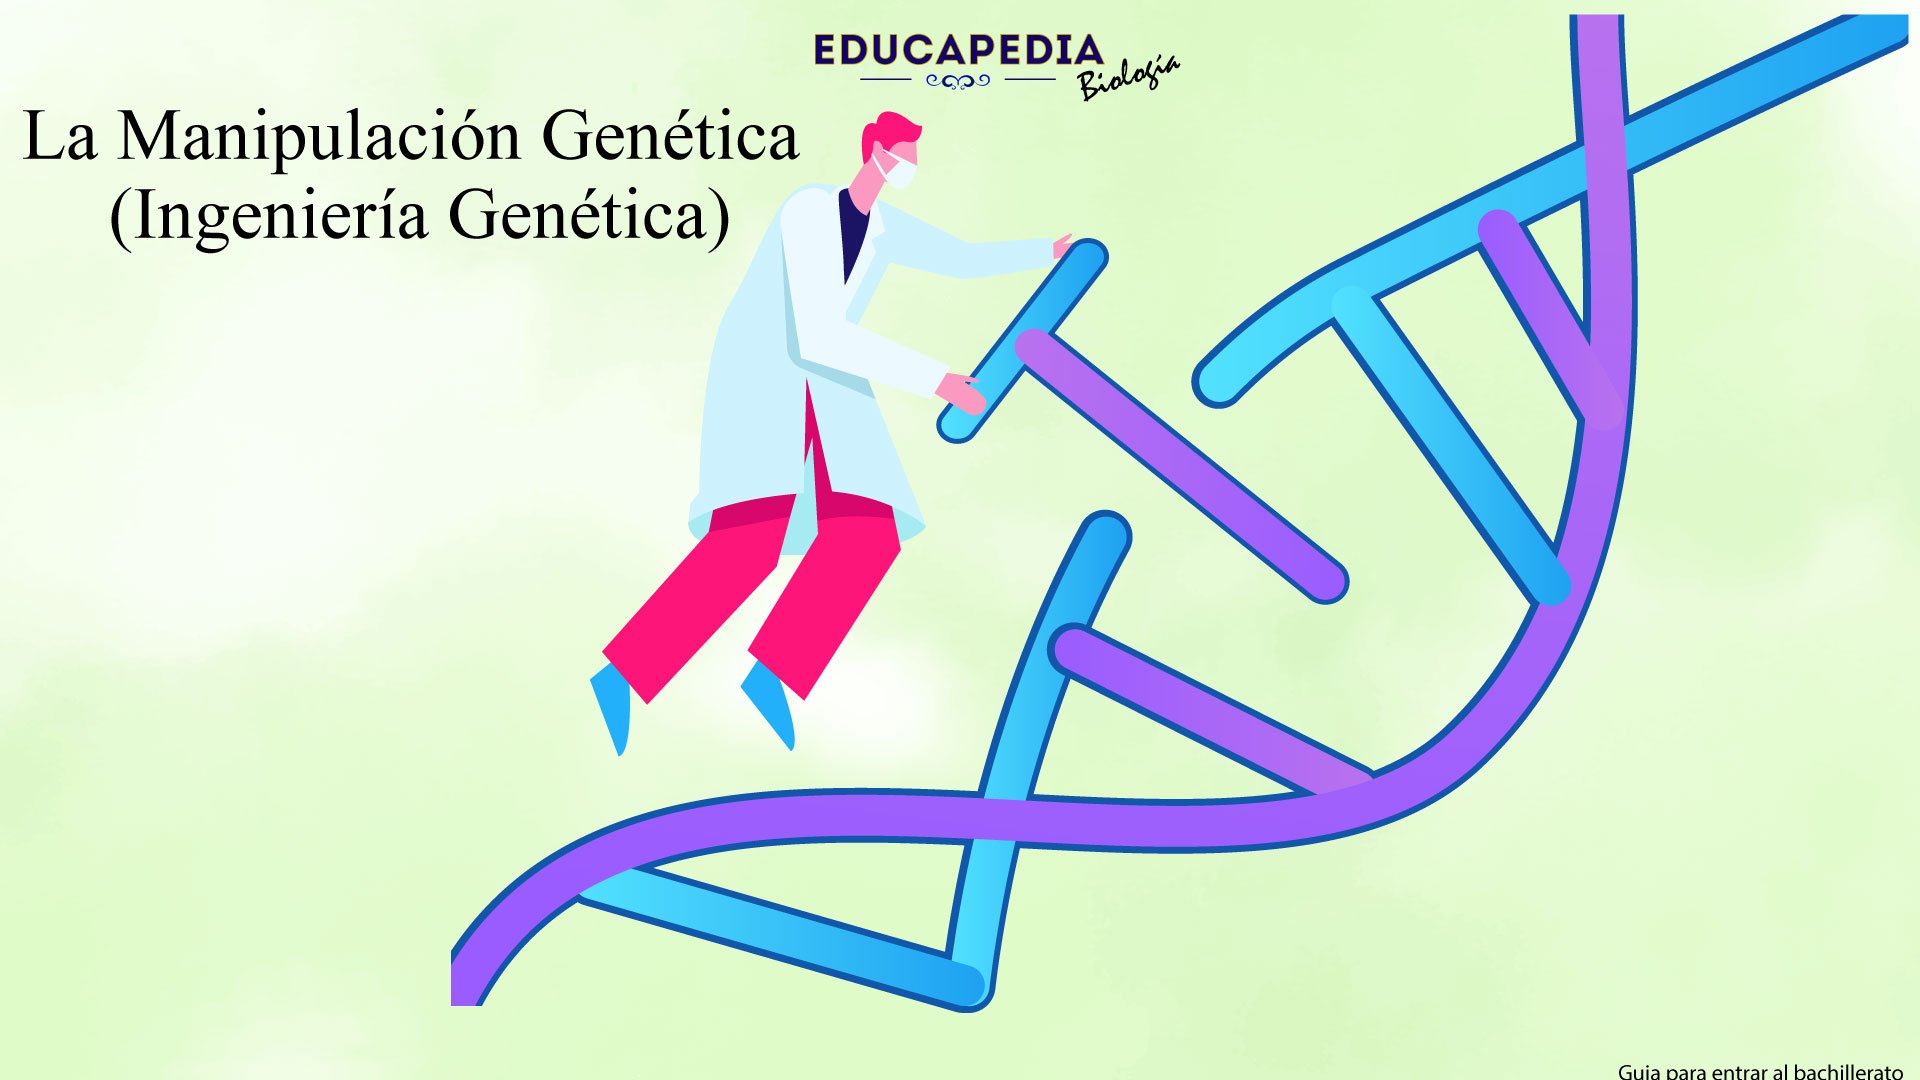 La Manipulación Genética (Ingeniería Genética)